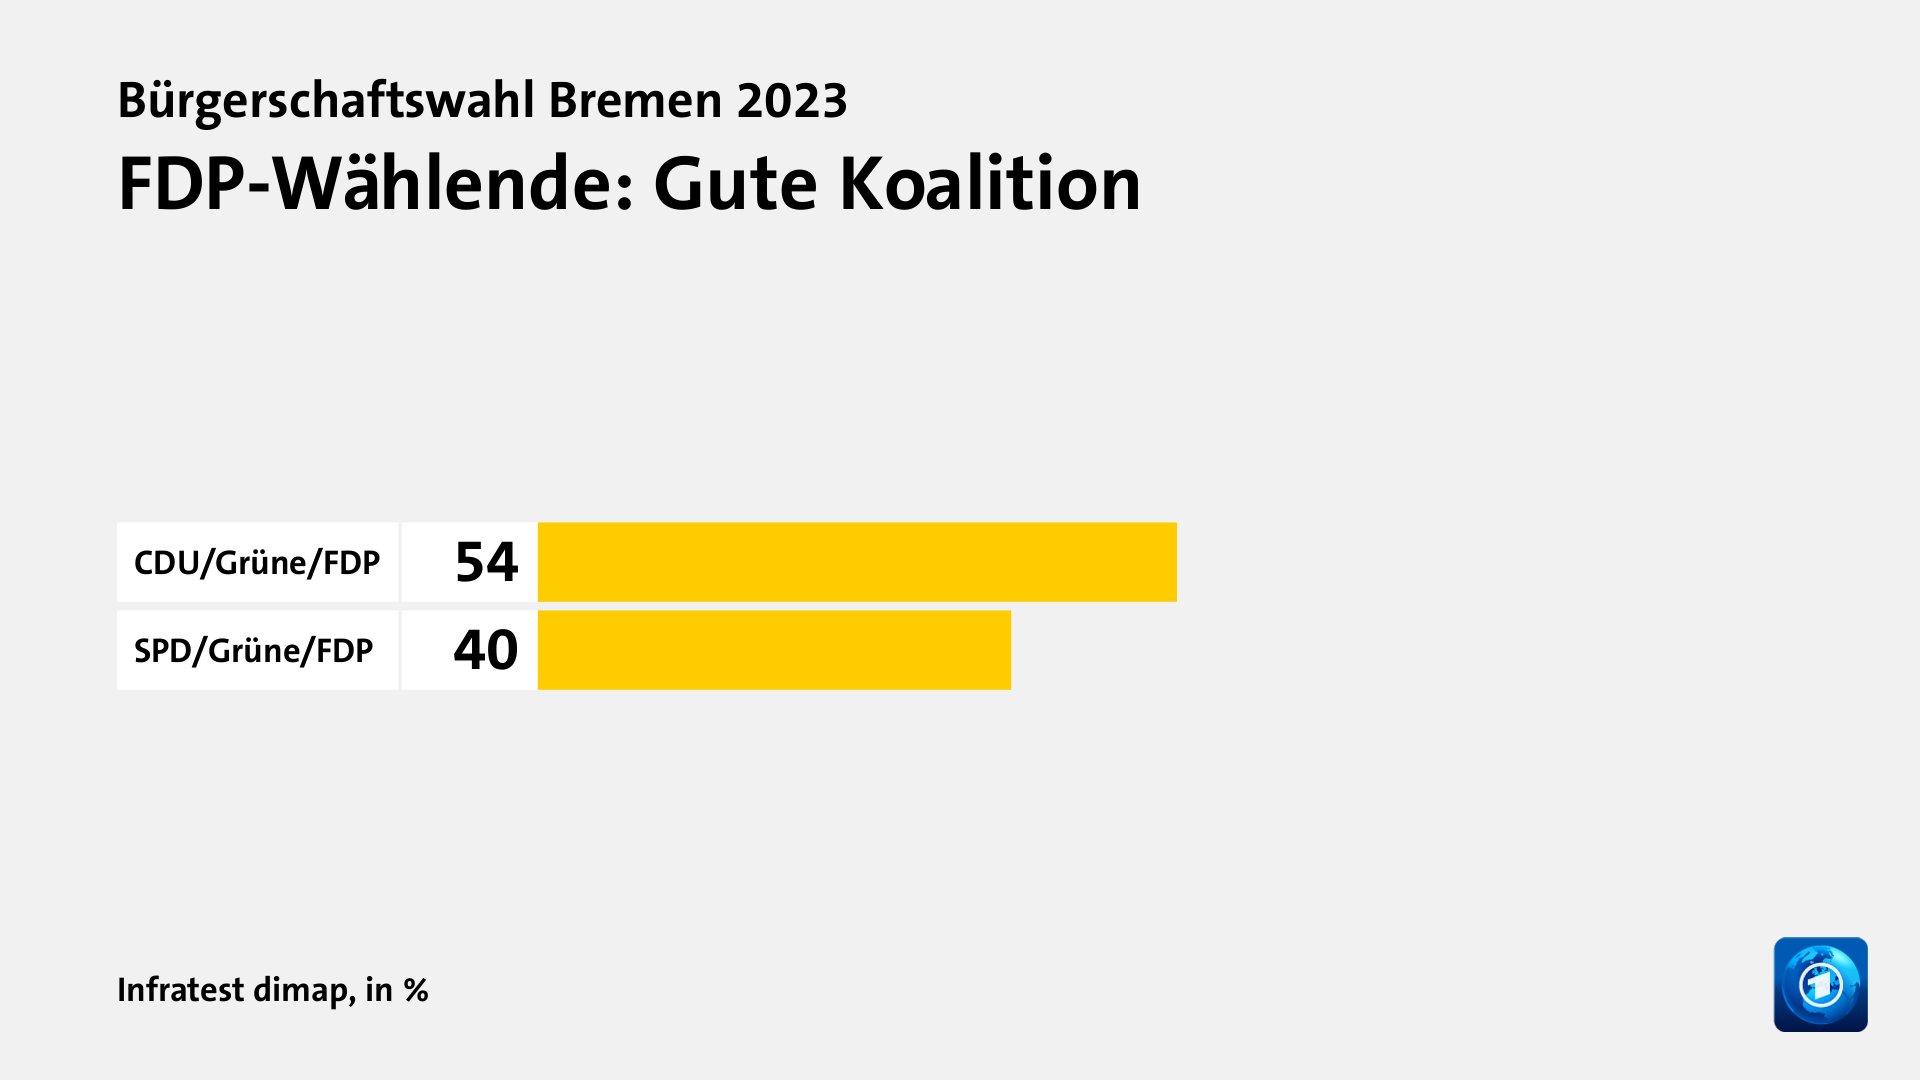 FDP-Wählende: Gute Koalition, in %: CDU/Grüne/FDP 54, SPD/Grüne/FDP 40, Quelle: Infratest dimap